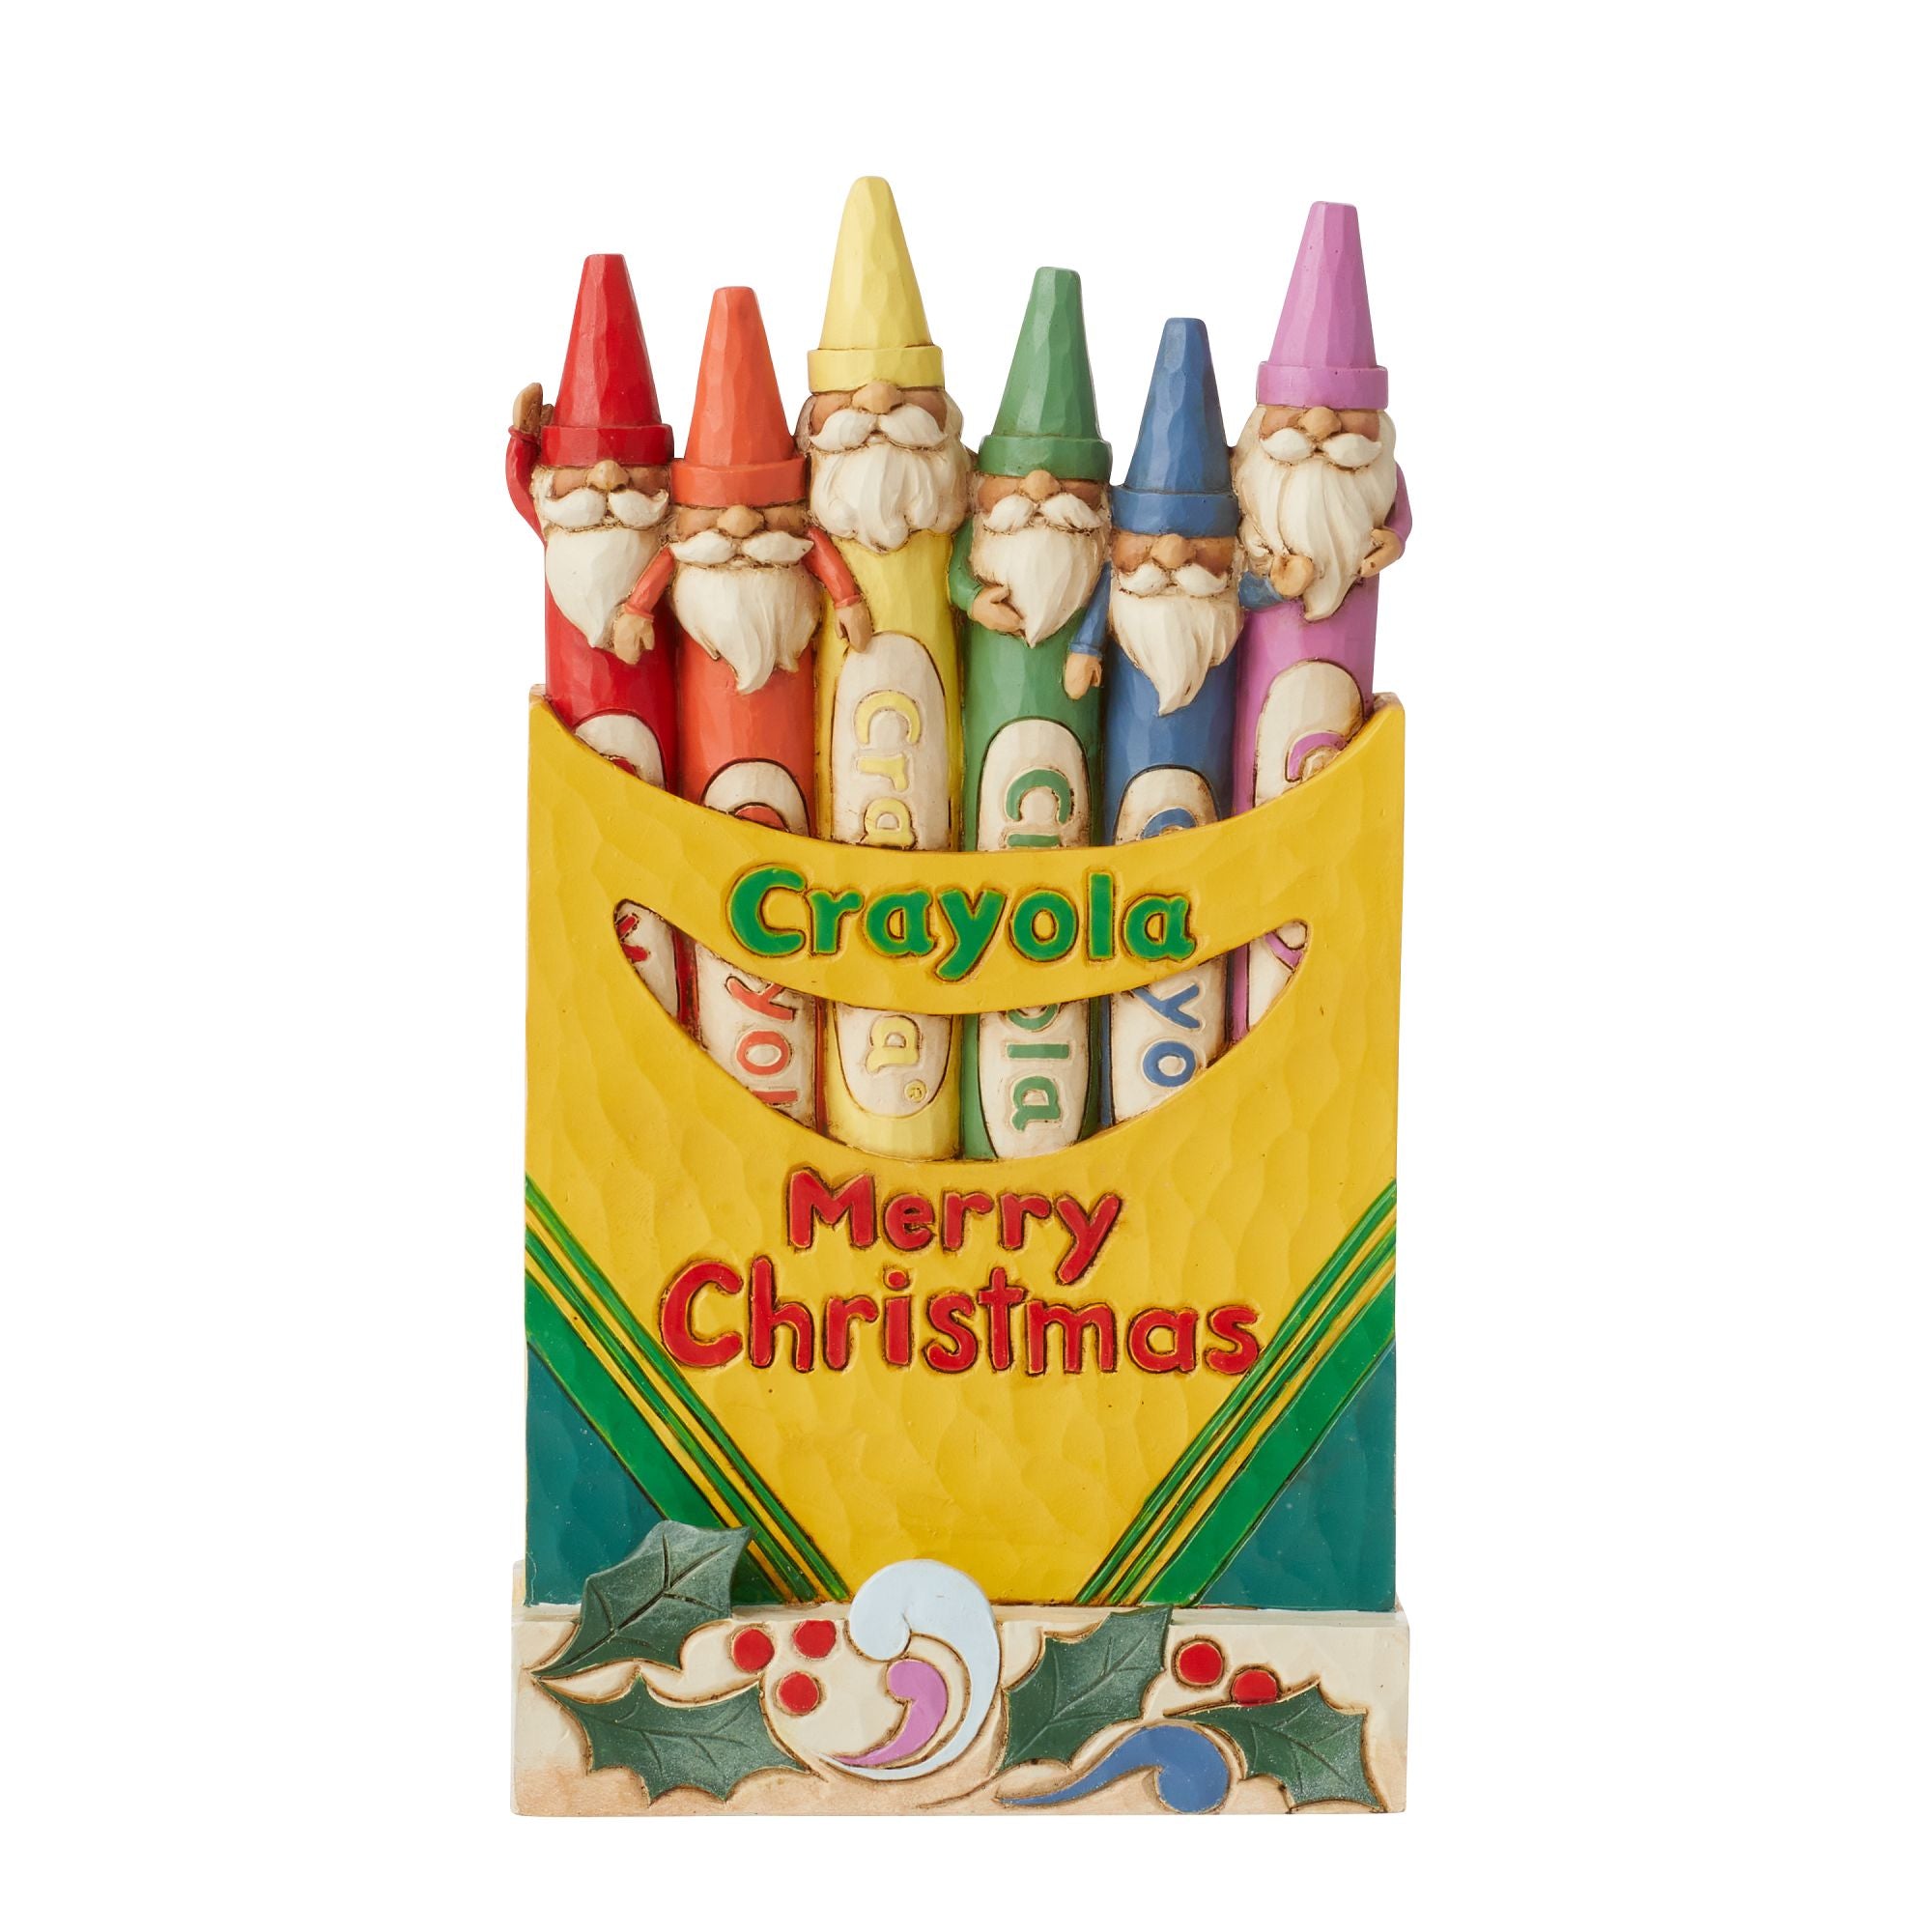 Custom Printed Christmas Crayon Pack 4 Pieces - Christmas